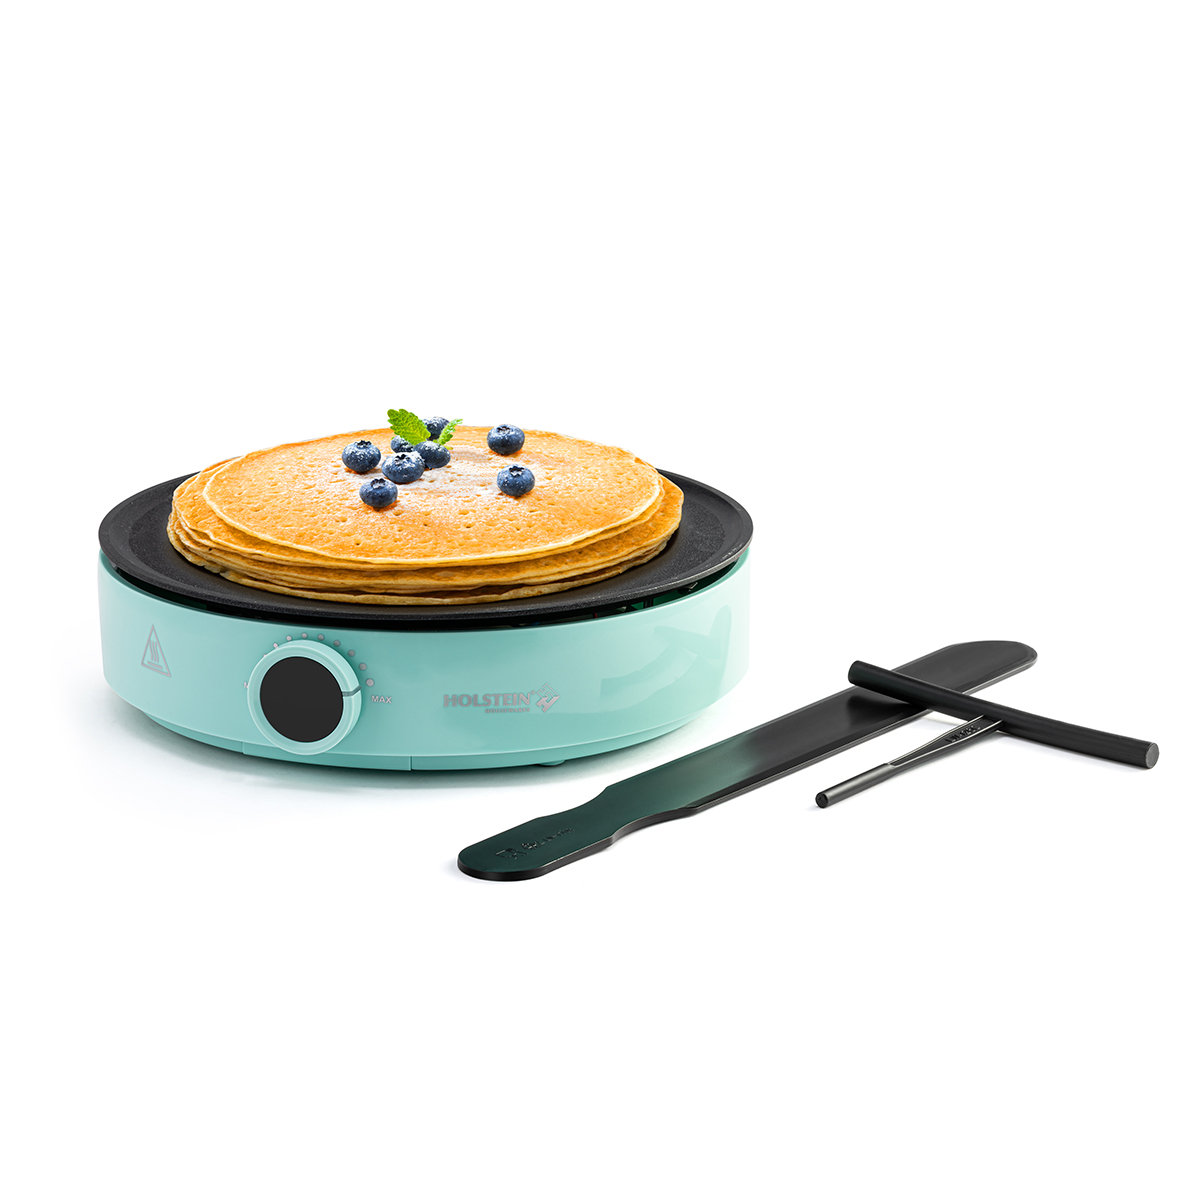 Bella Mini Portable Round Electric Mini Donut Baker Nonstick in